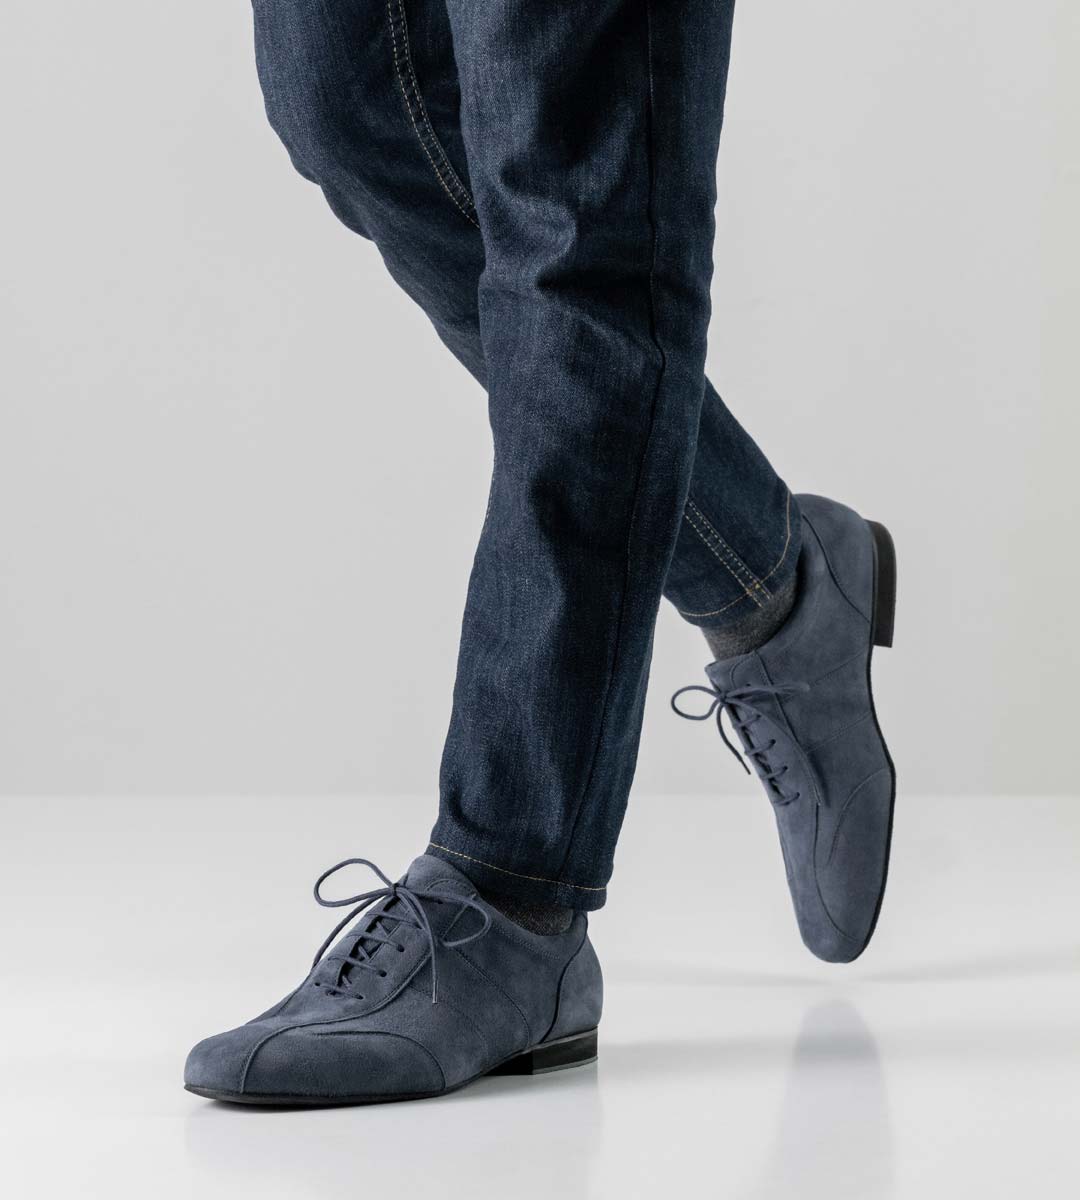 Men's dance shoe Sneaker in blue by Werner Kern for Salsa